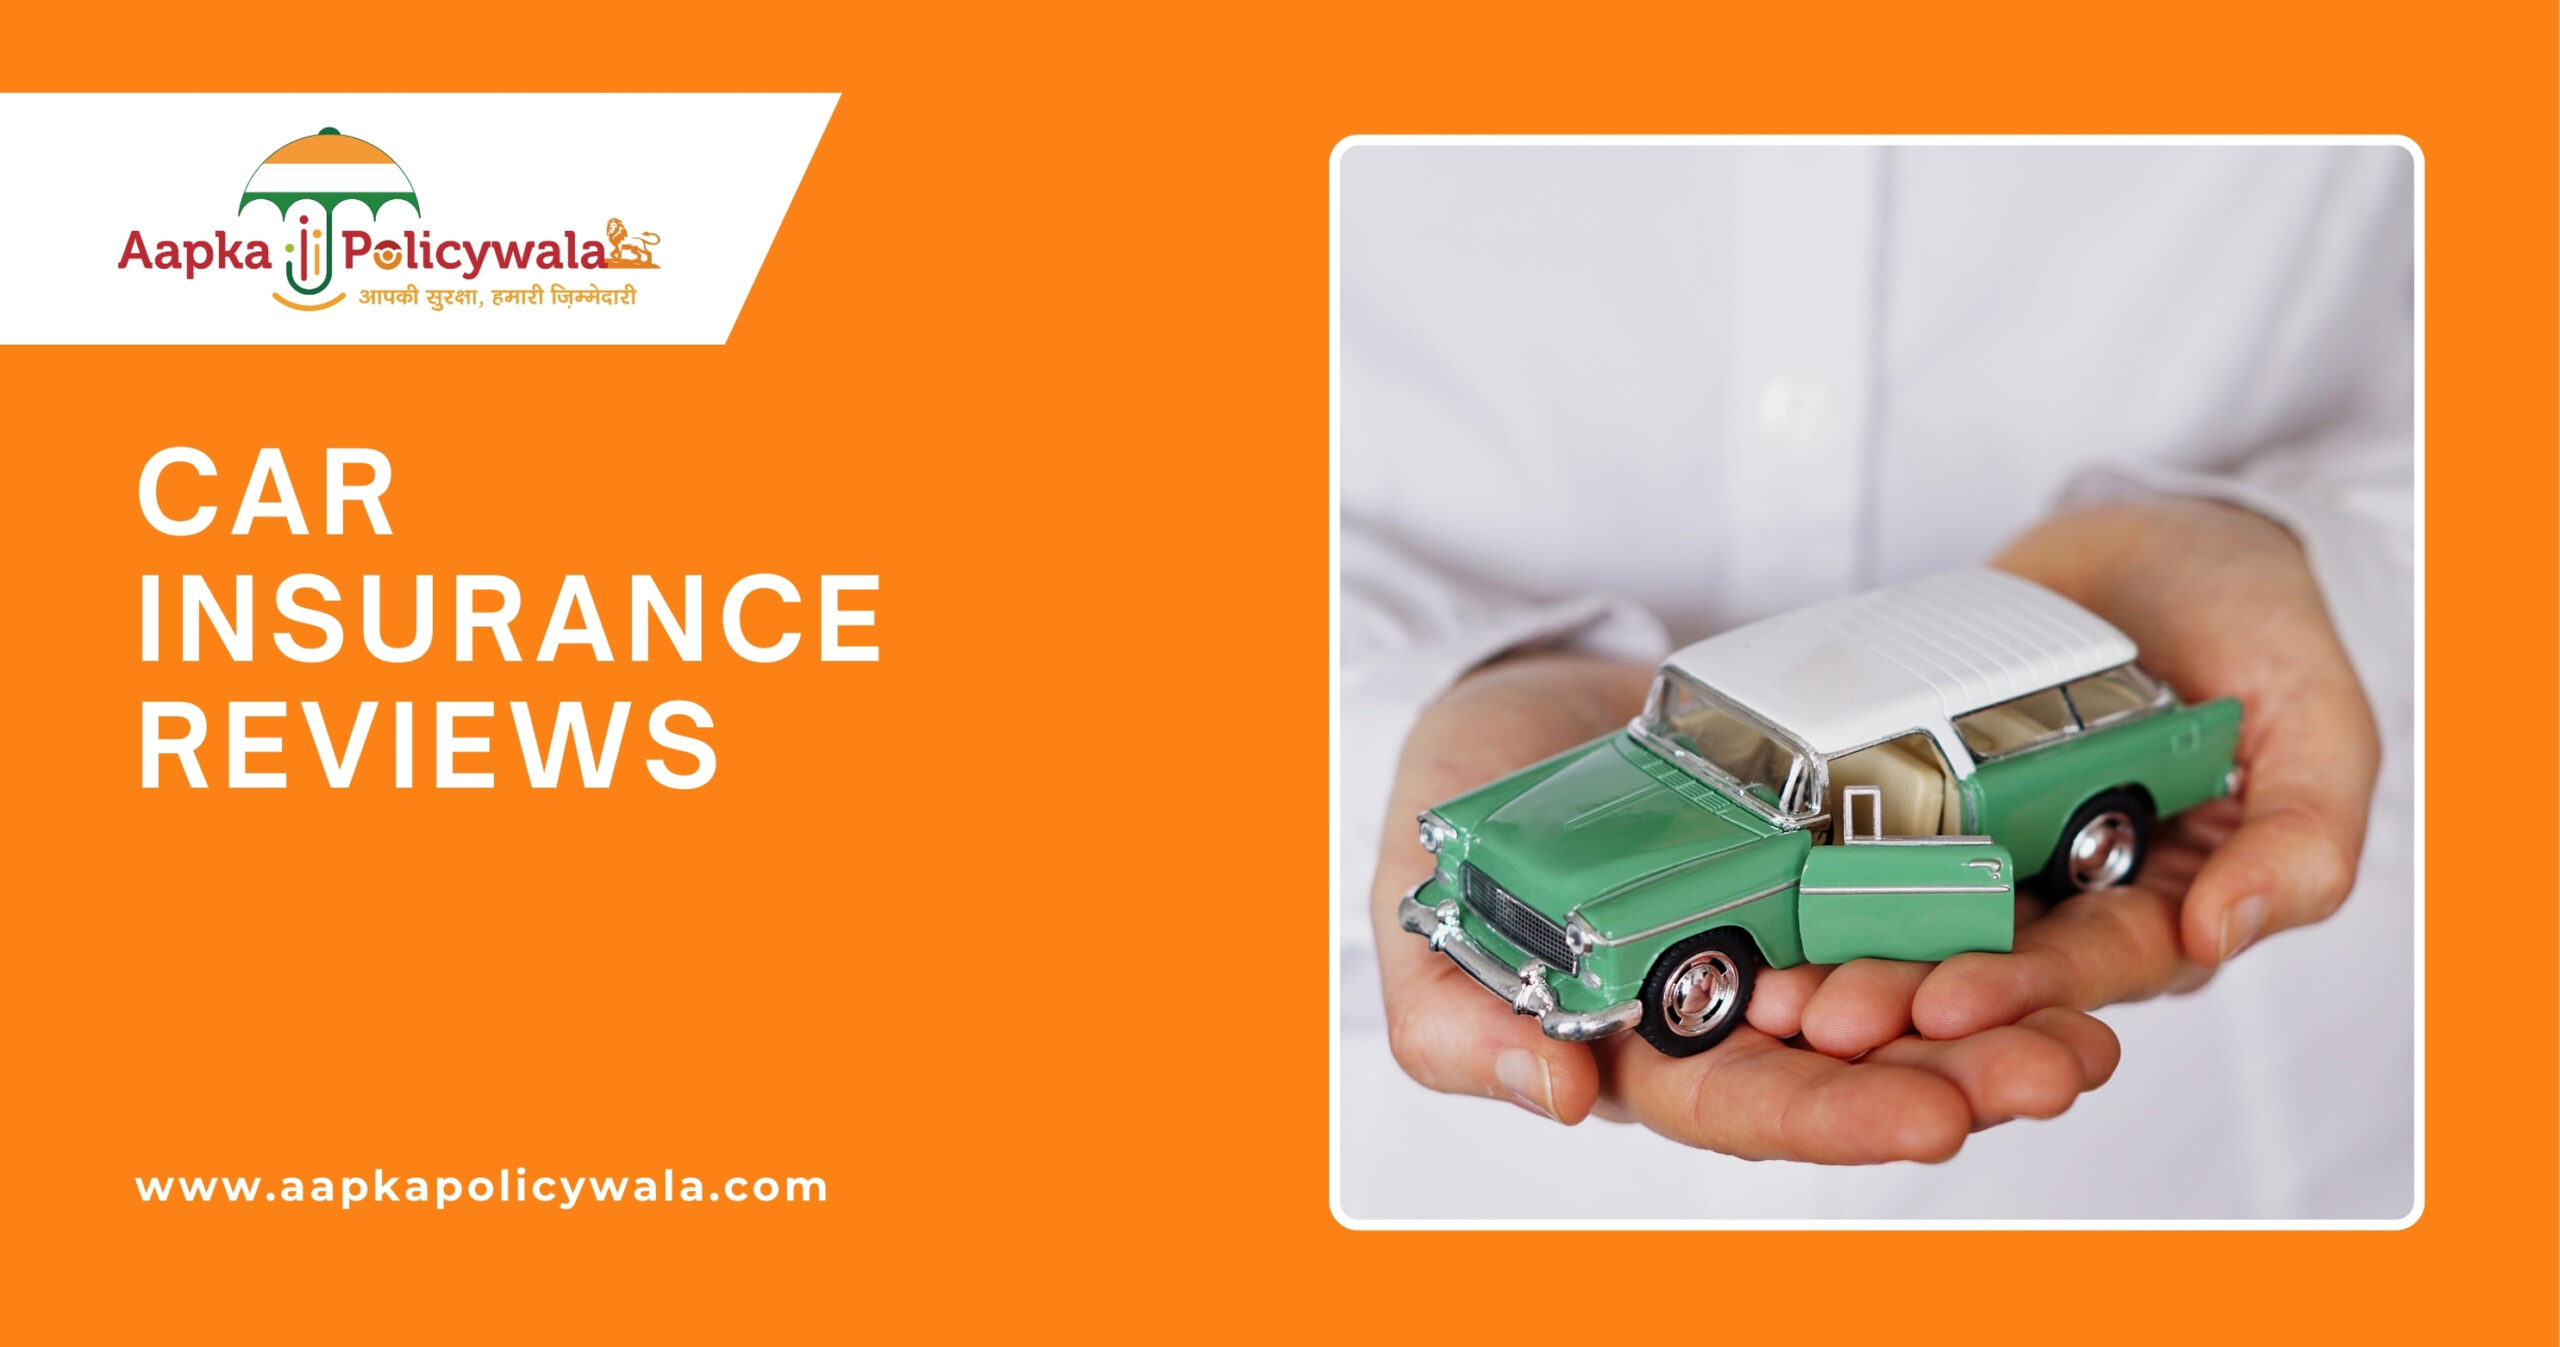 car insurance renewal online at aapkapolicywala